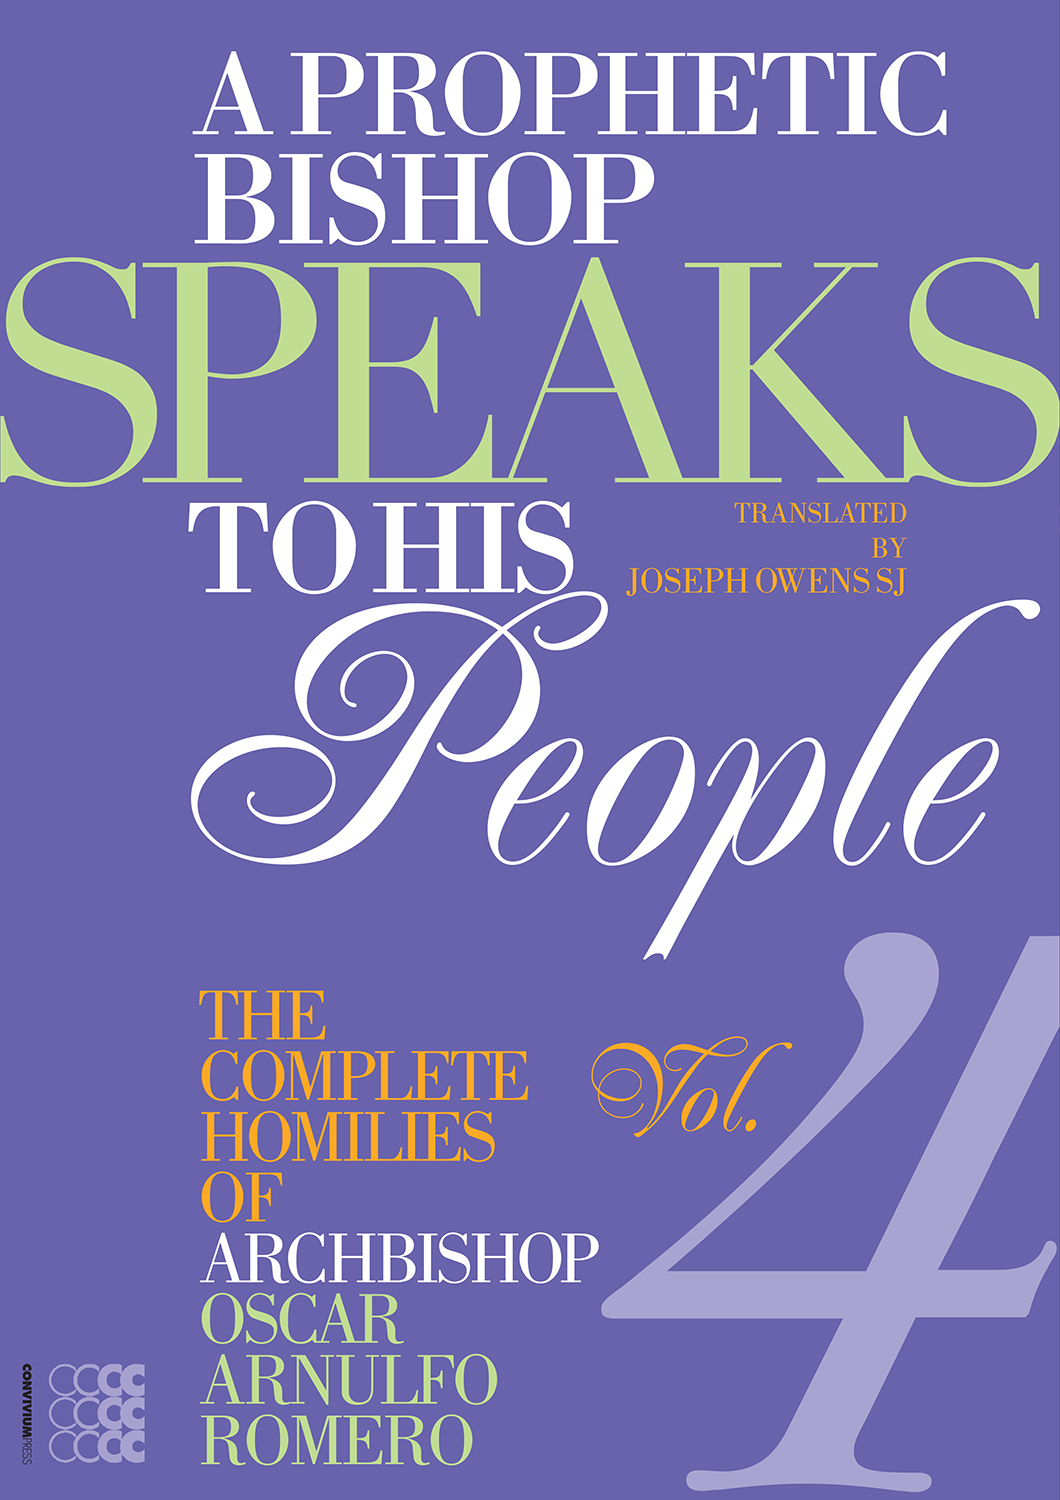 A Prophetic Bishop Speaks to his People 4